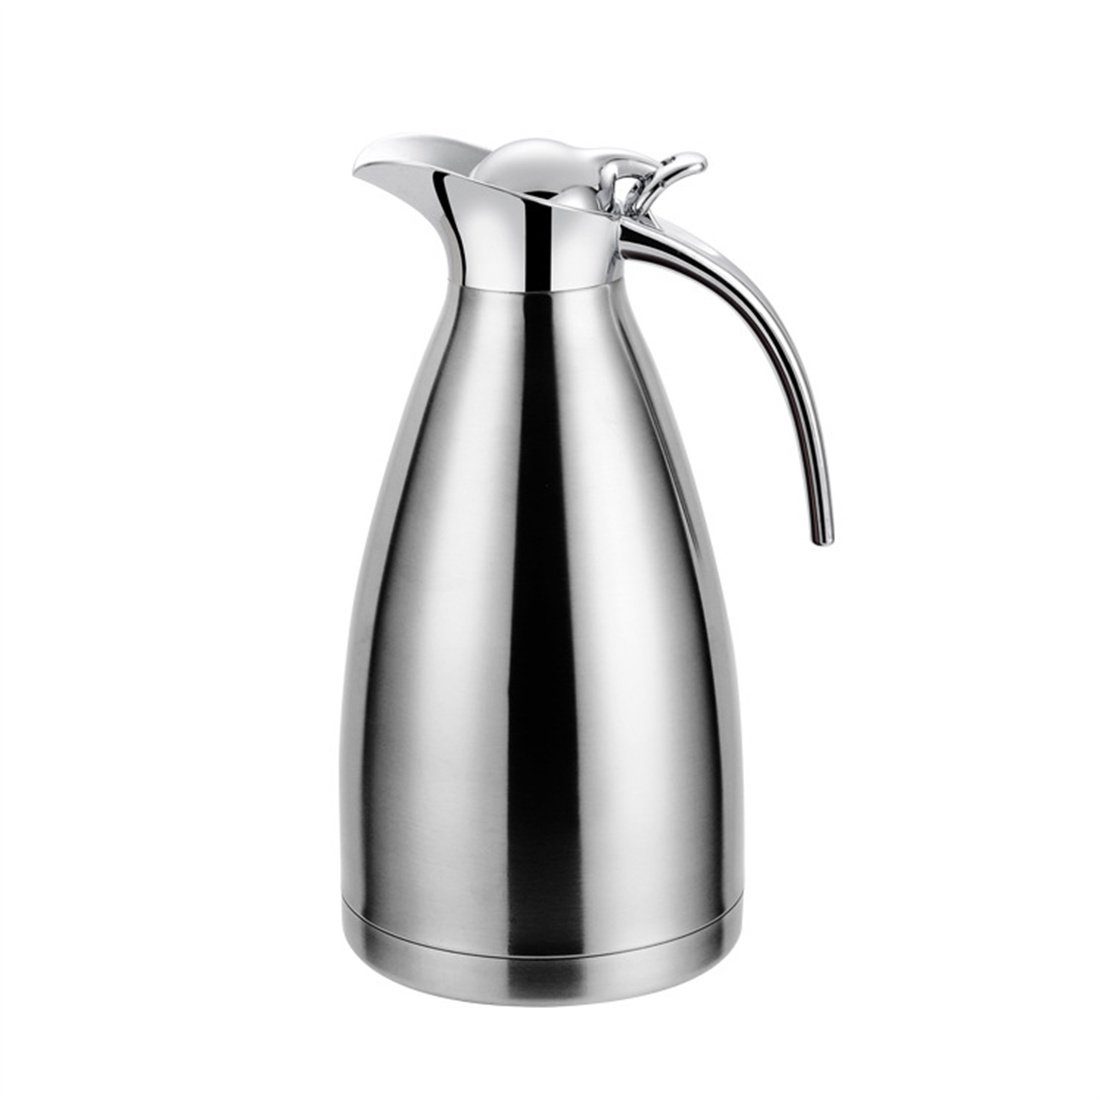 DÖRÖY Isolierkanne Isolierter Edelstahl-Wasserkocher, Heißwasserkocher, 2.0L Kaffeekanne Silber